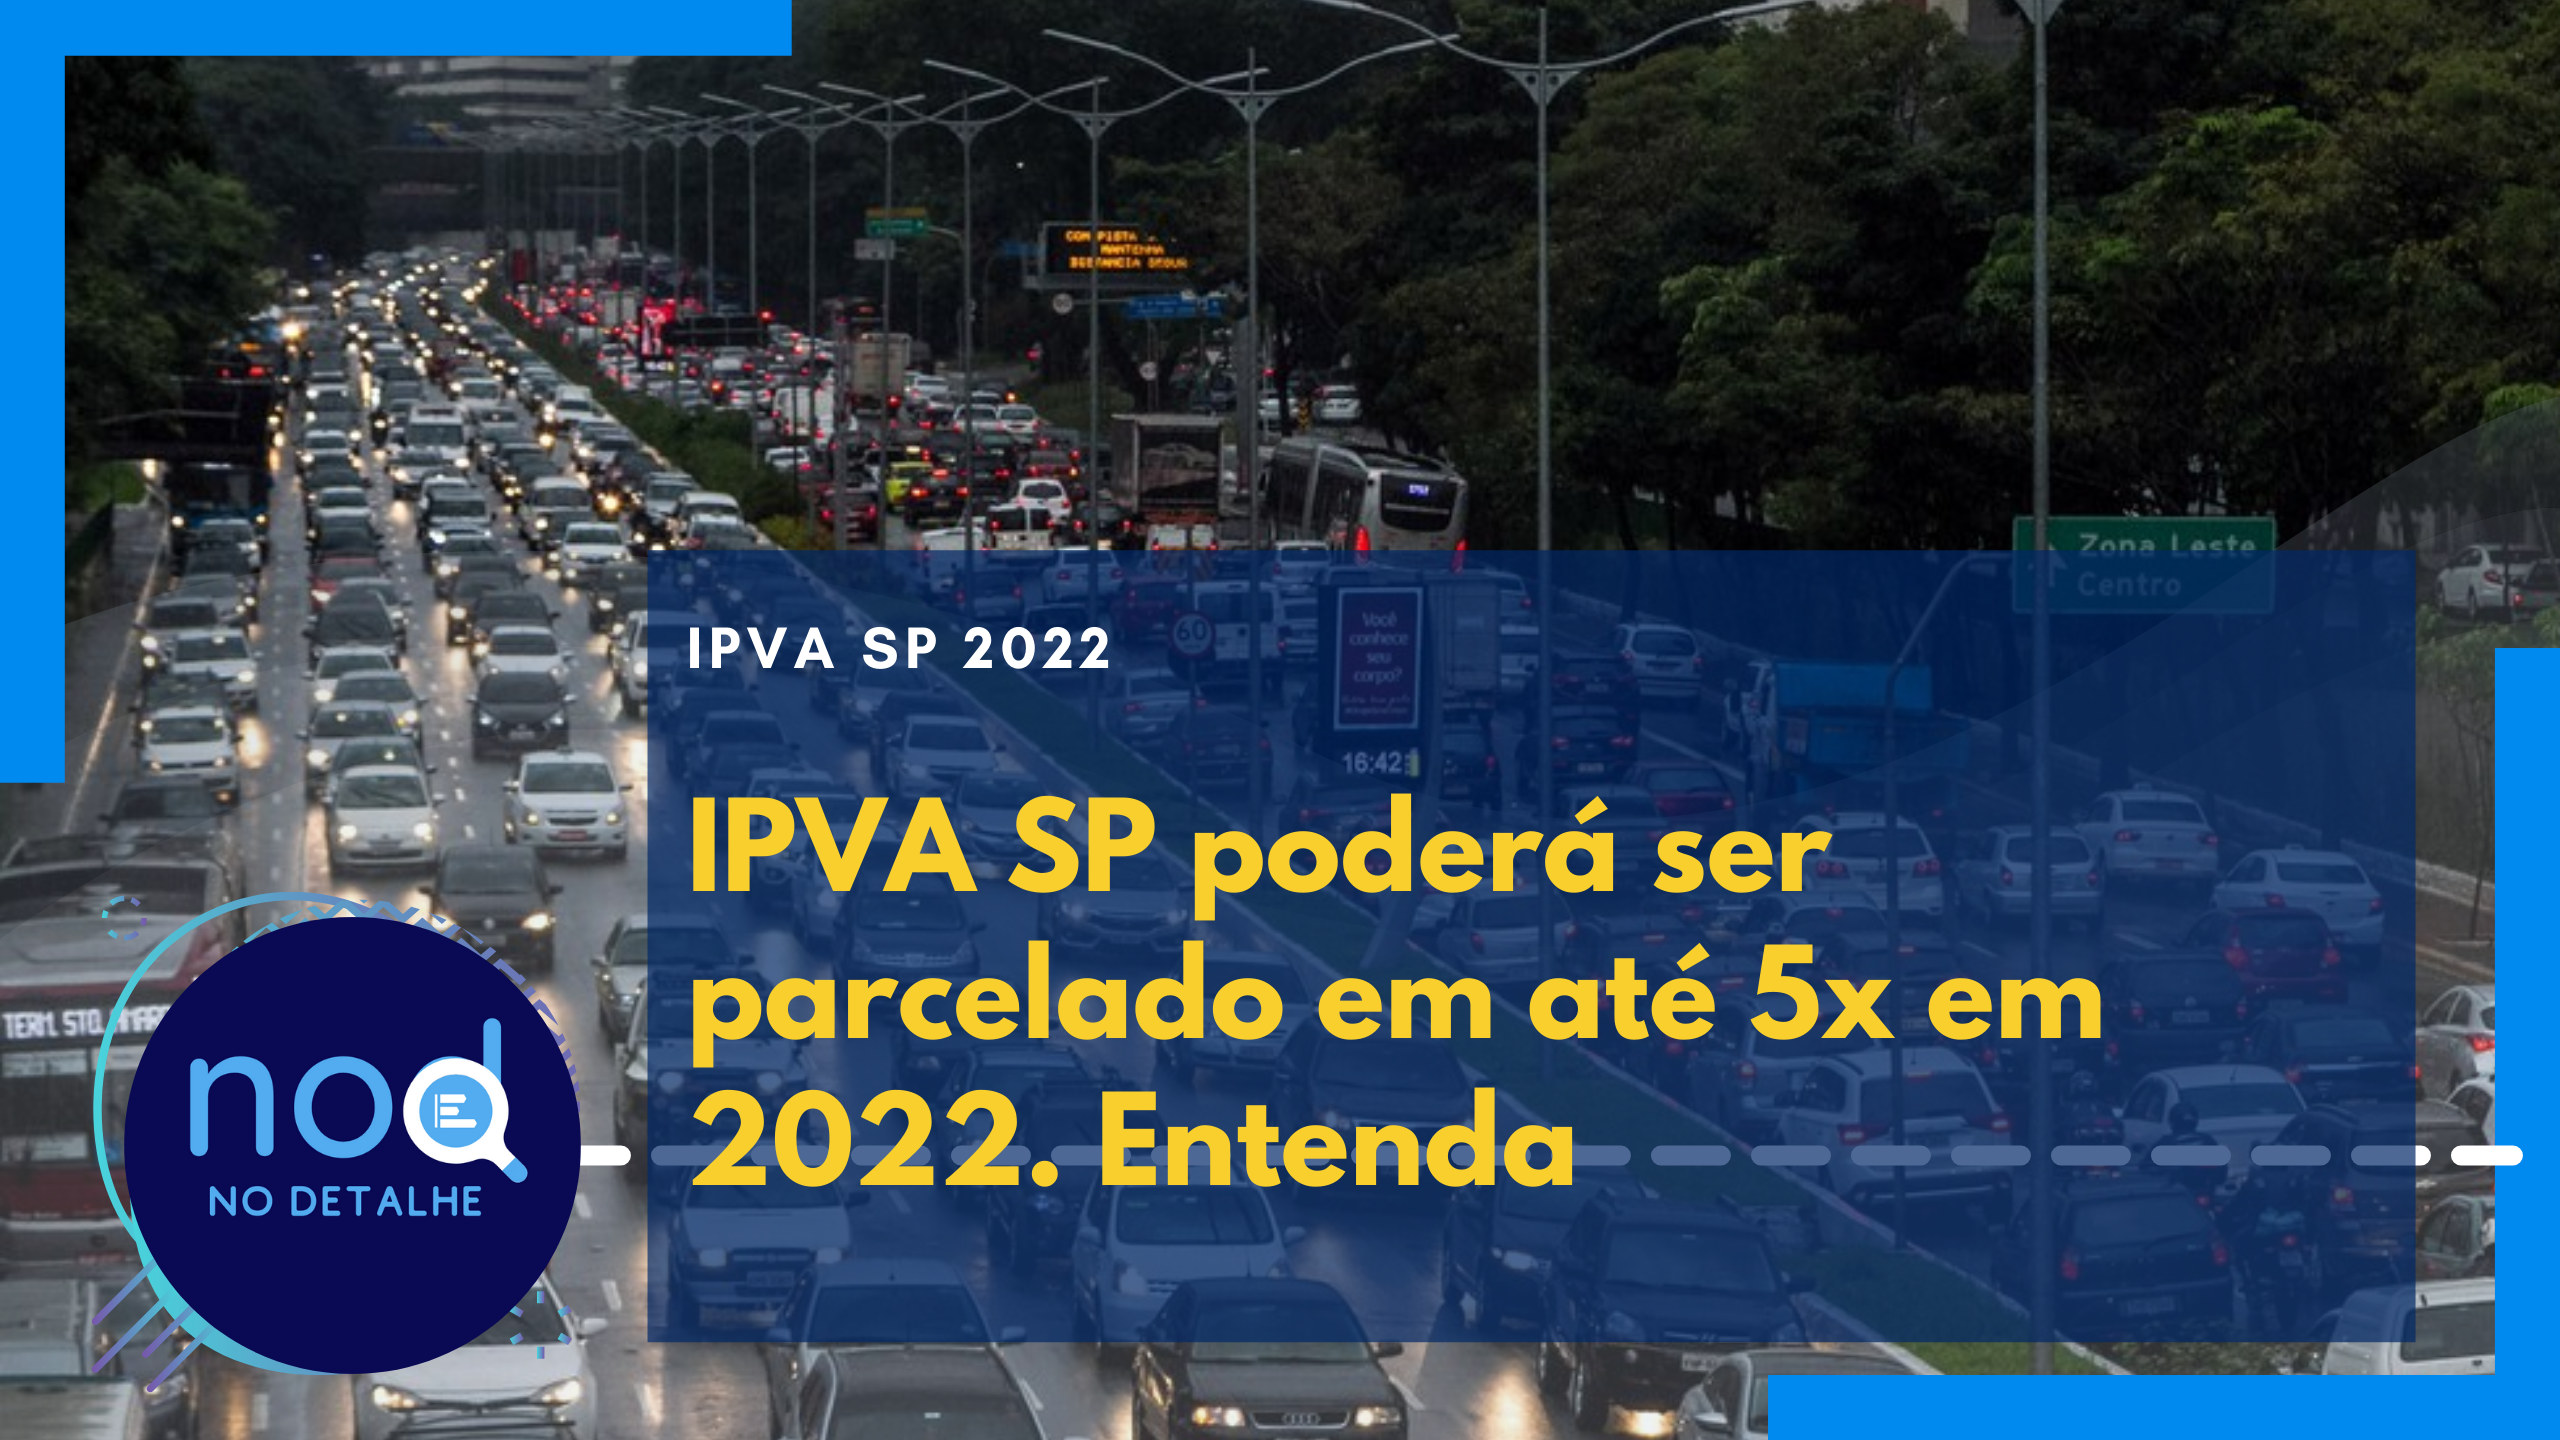 IPVA 2022 em São Paulo poderá ser parcelado em até 5x. Entenda